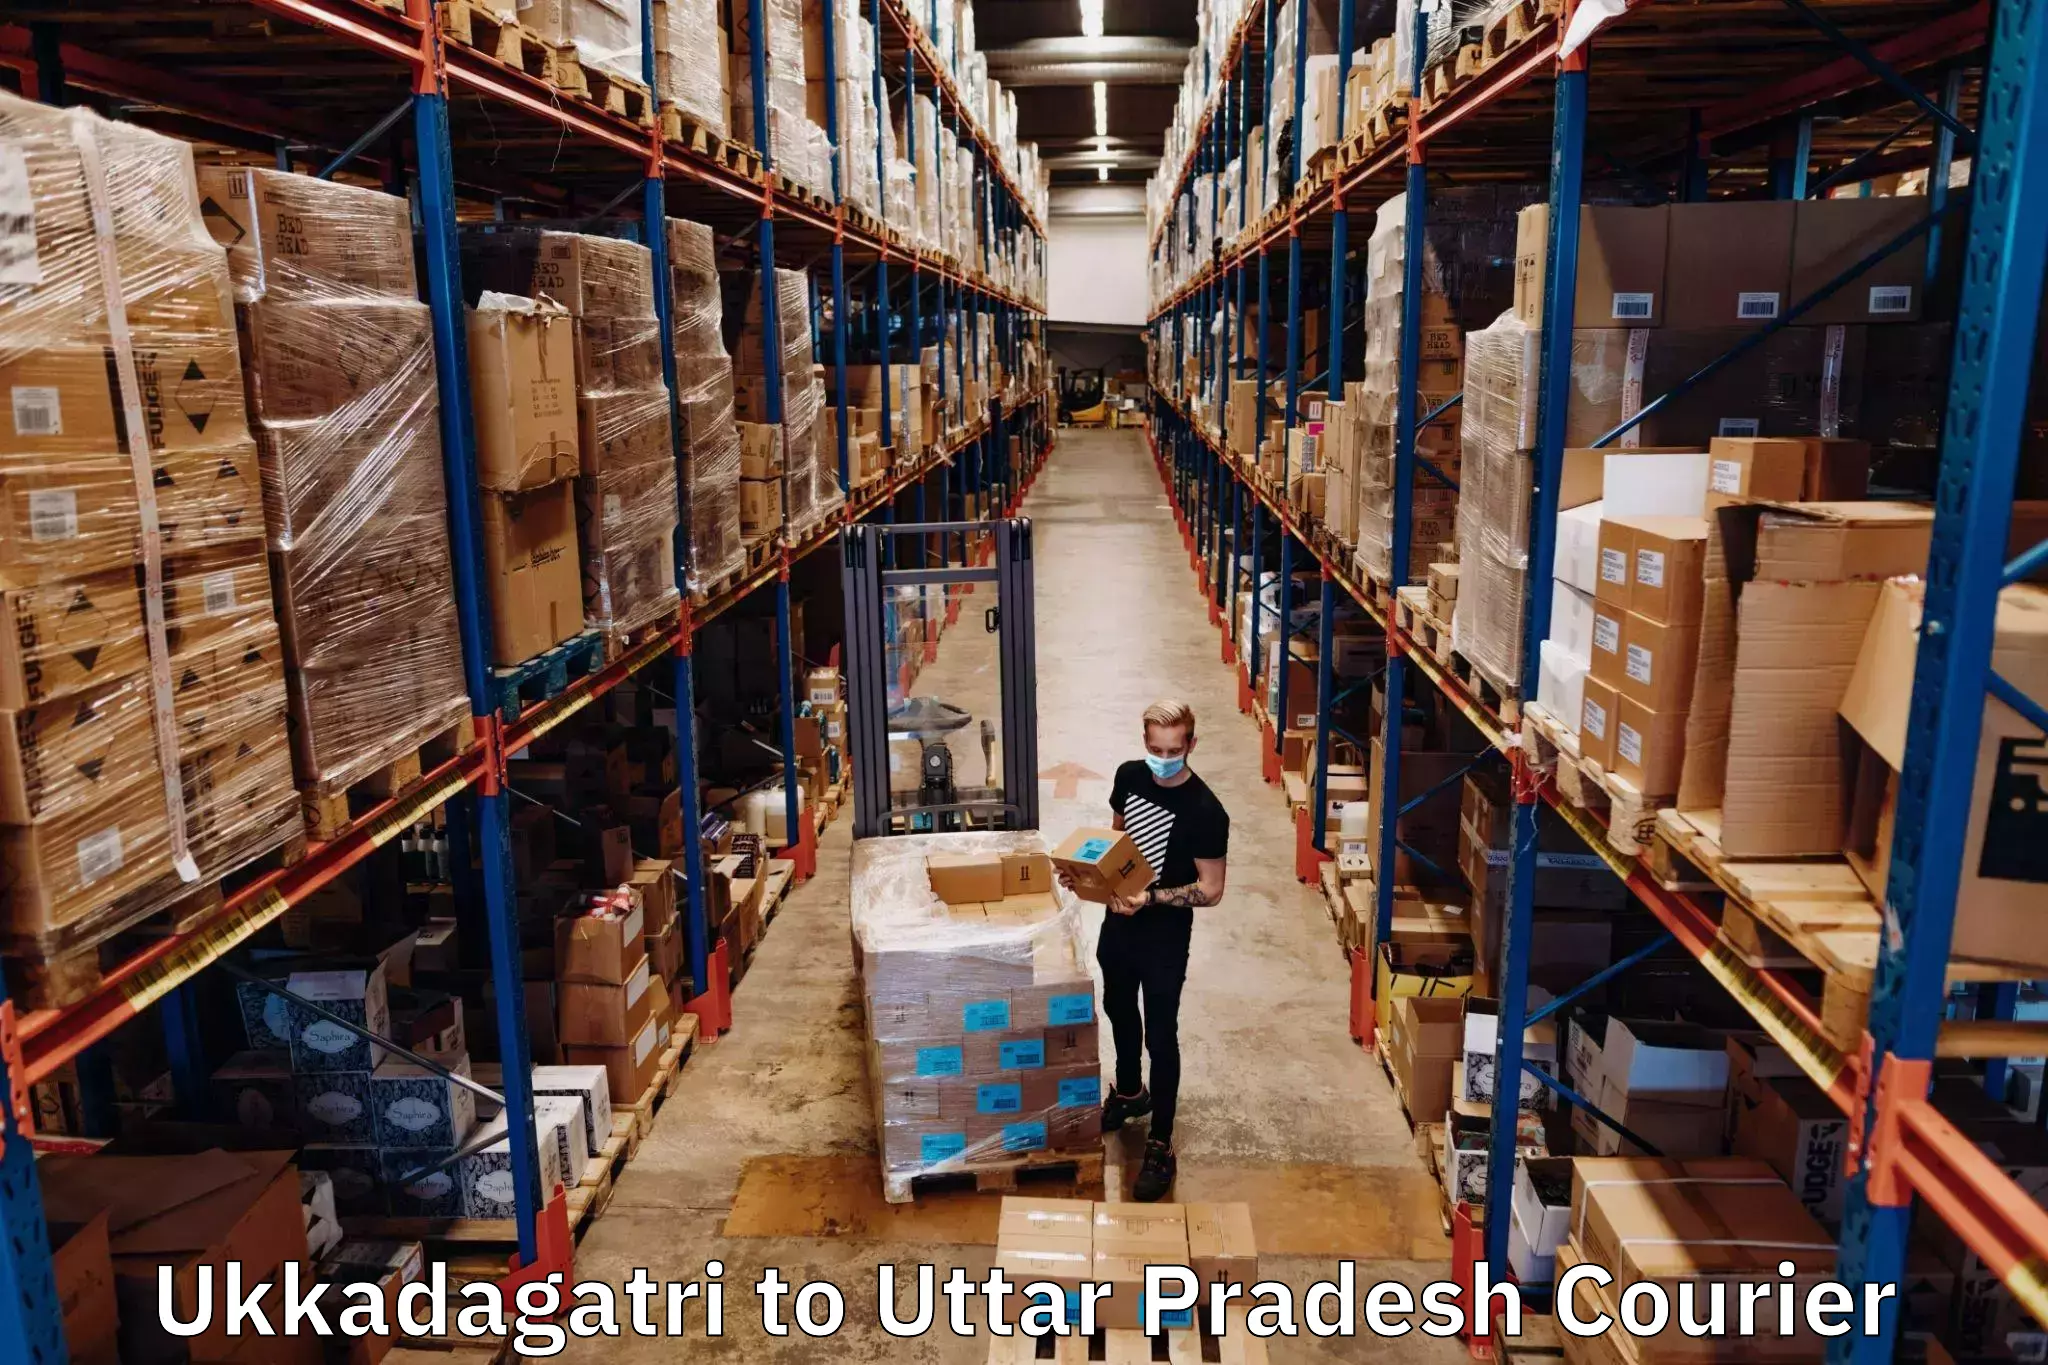 Flexible delivery scheduling Ukkadagatri to Bakewar